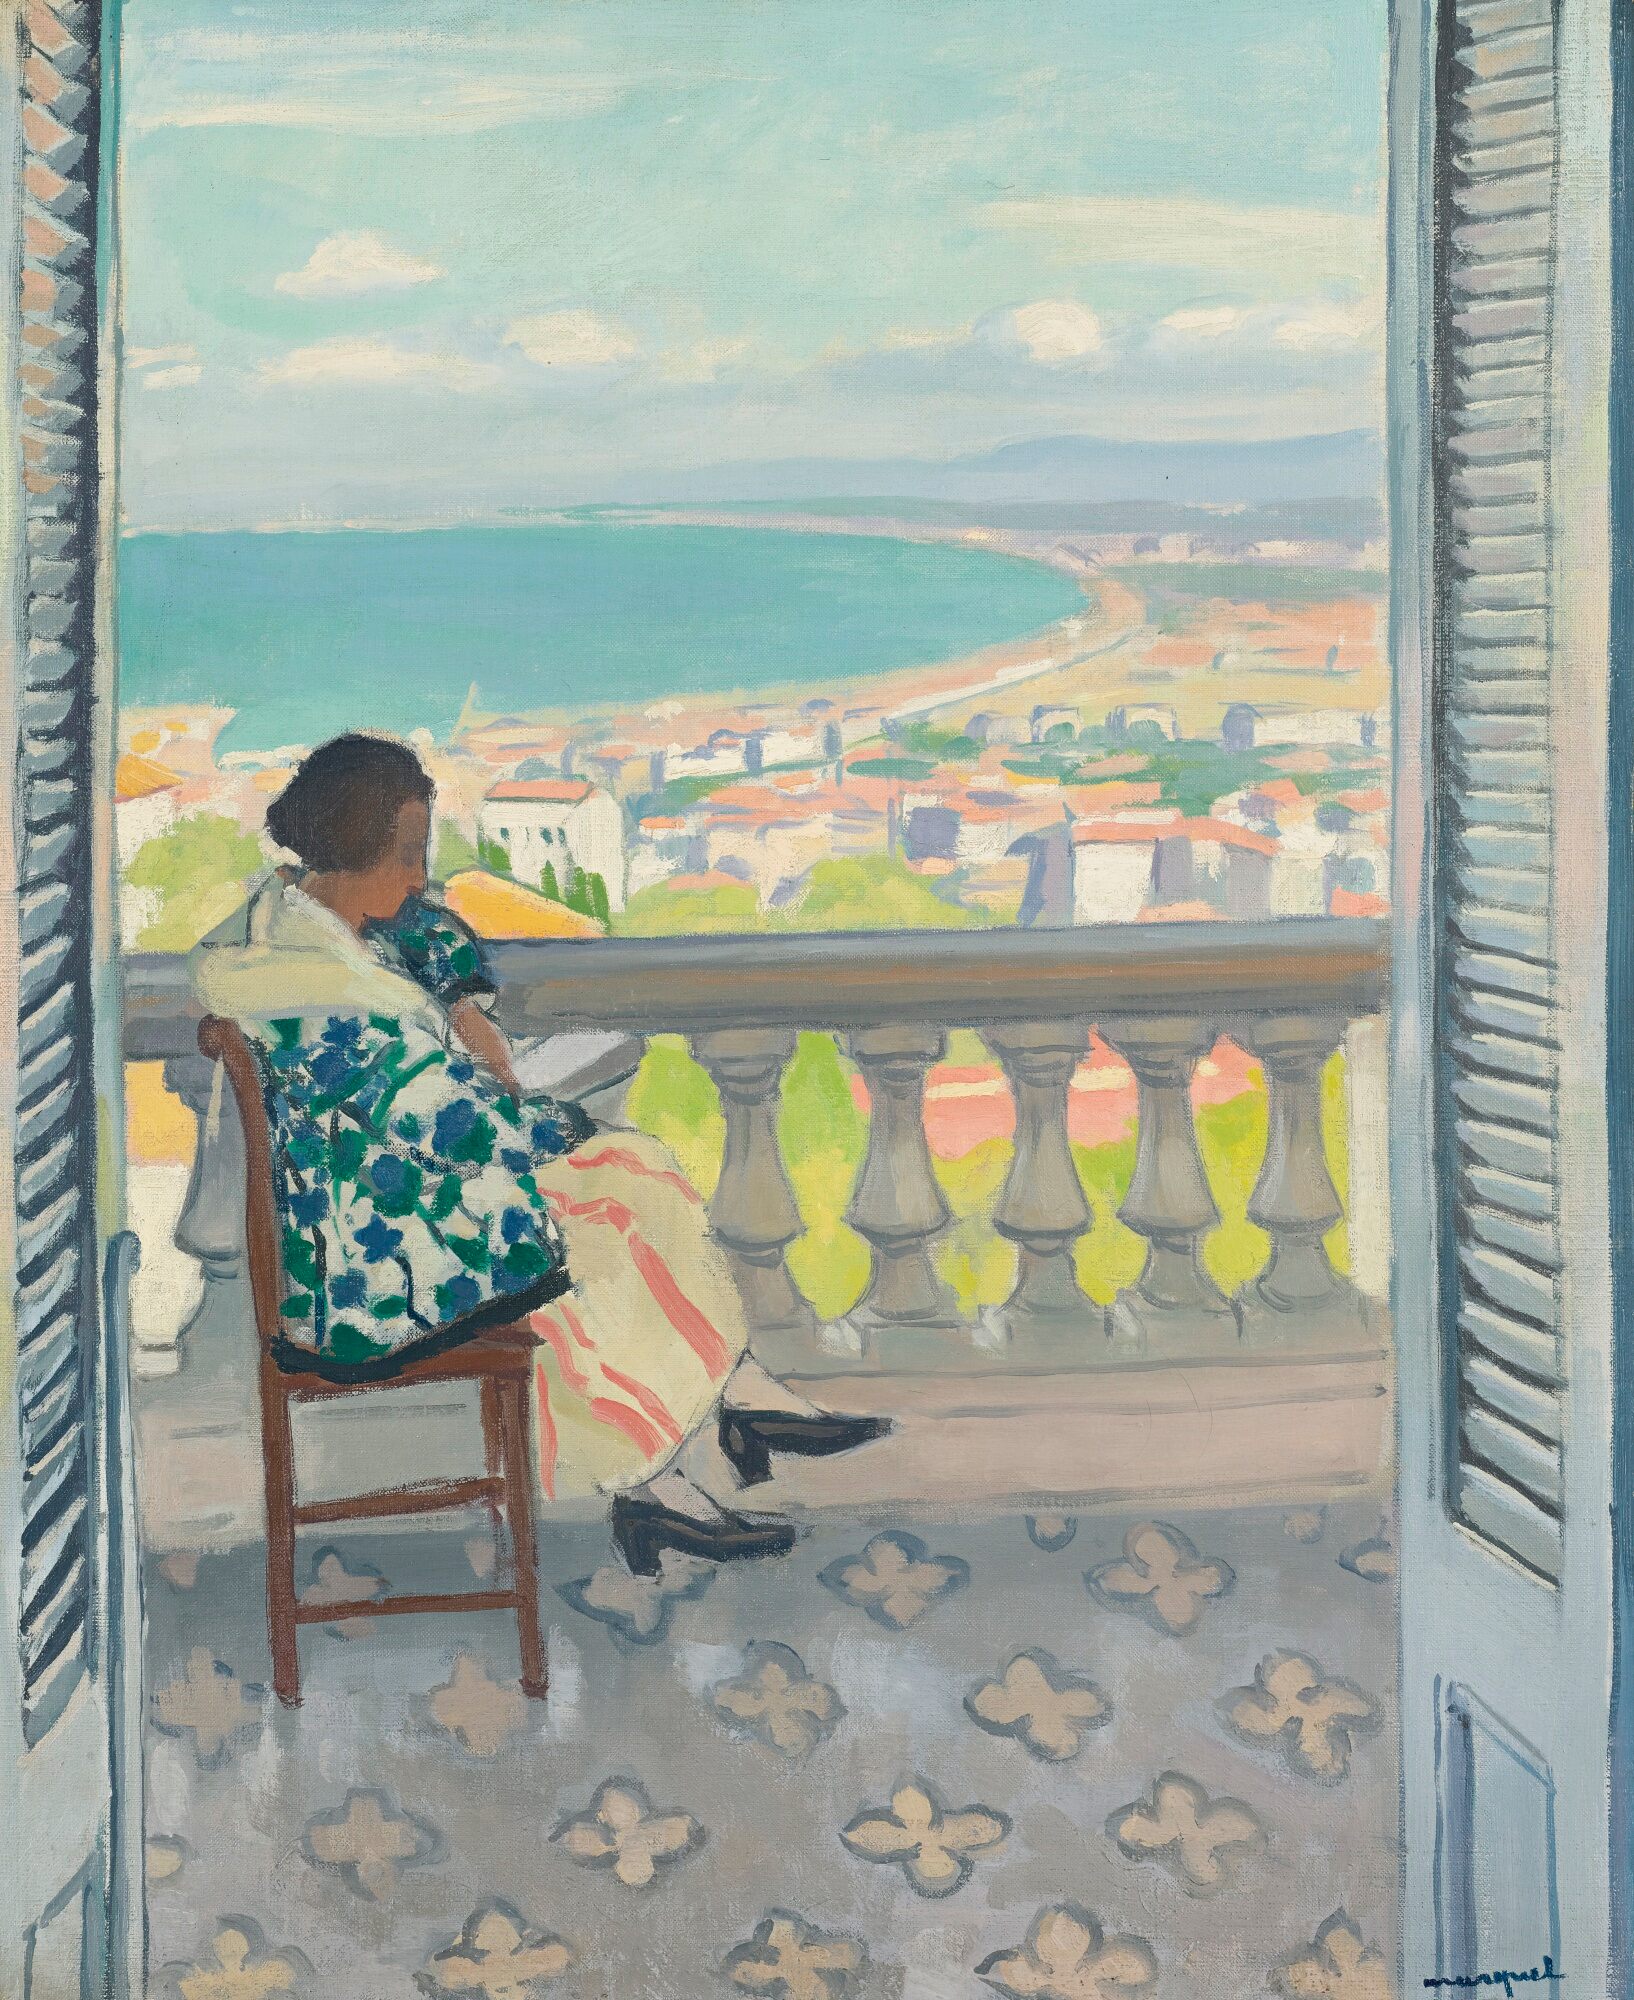 Madame Albert Marquet a Ler by Albert Marquet - 1924 - 73 x 59.7 cm coleção privada